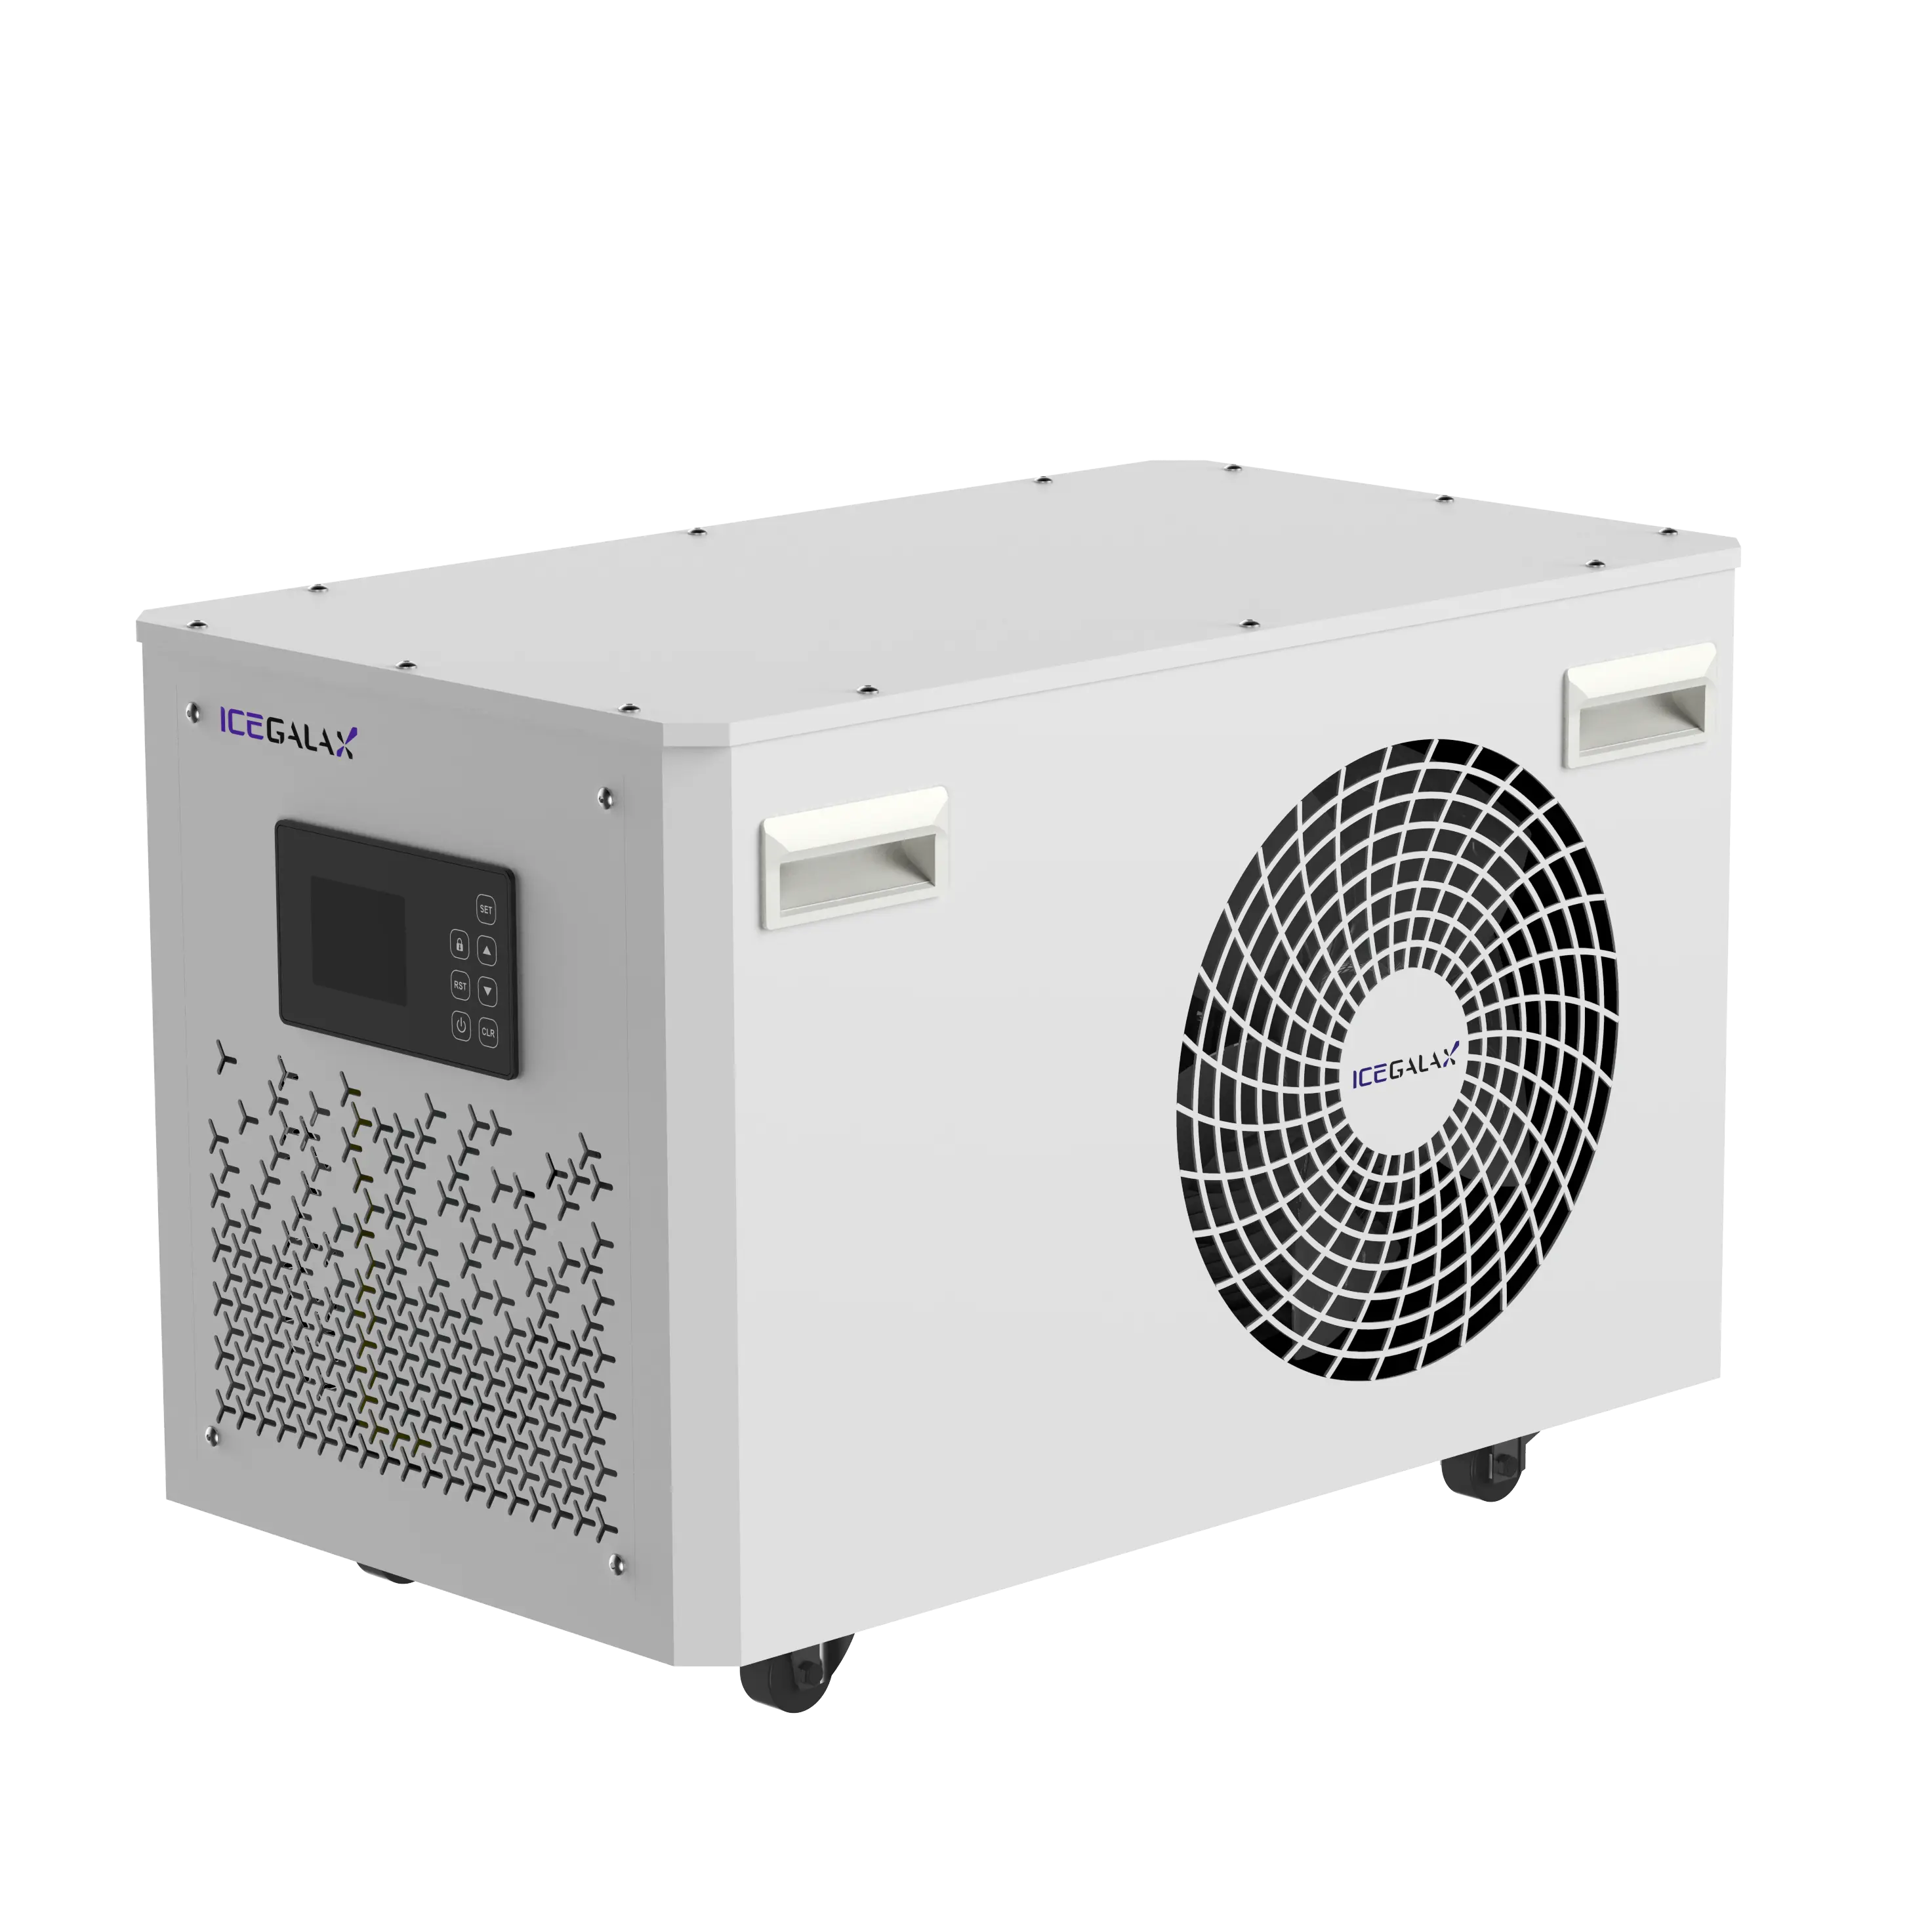 ICEGALAX kundenspezifisch 1/2 PS Hersteller Kunststoffverarbeitung luftgekühlte Kühlungsausrüstung Kühler für Eisbade